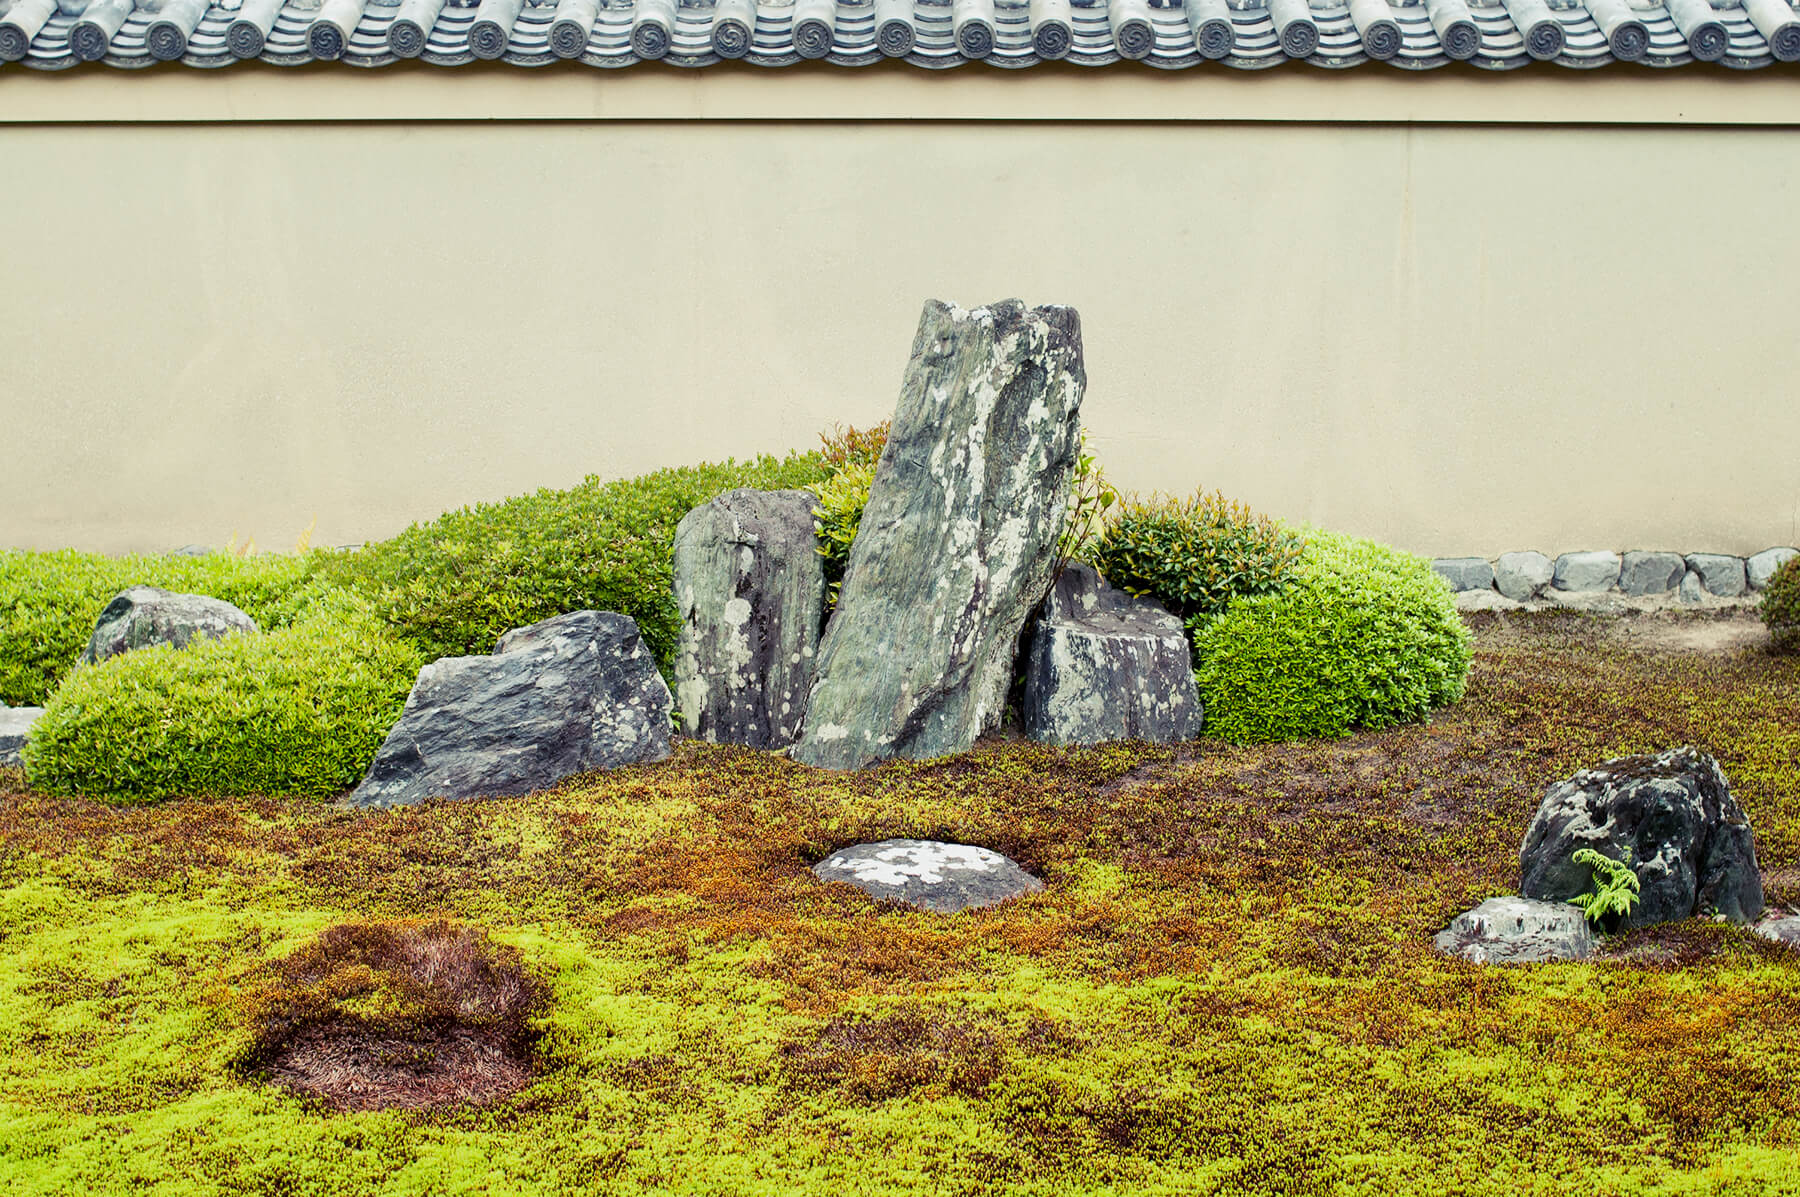 
          京都「大徳寺龍源院」の庭園写真2
      